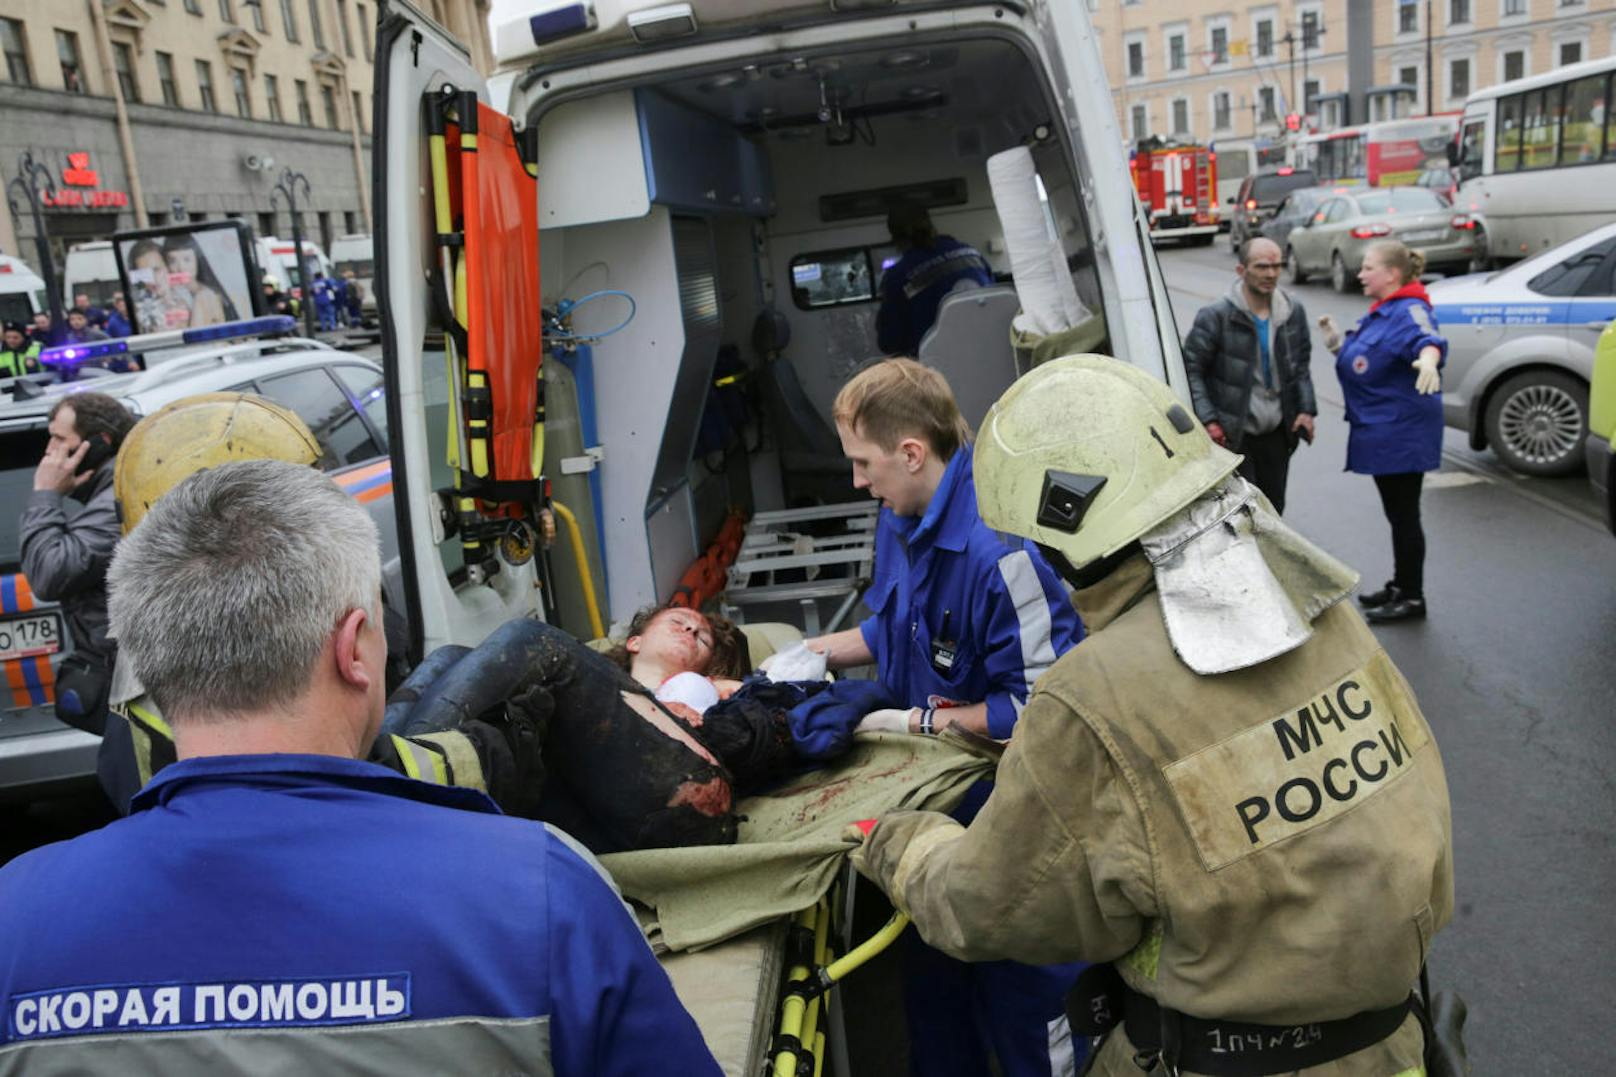 Verletzte vor der U-Bahnsstation in St. Petersburg